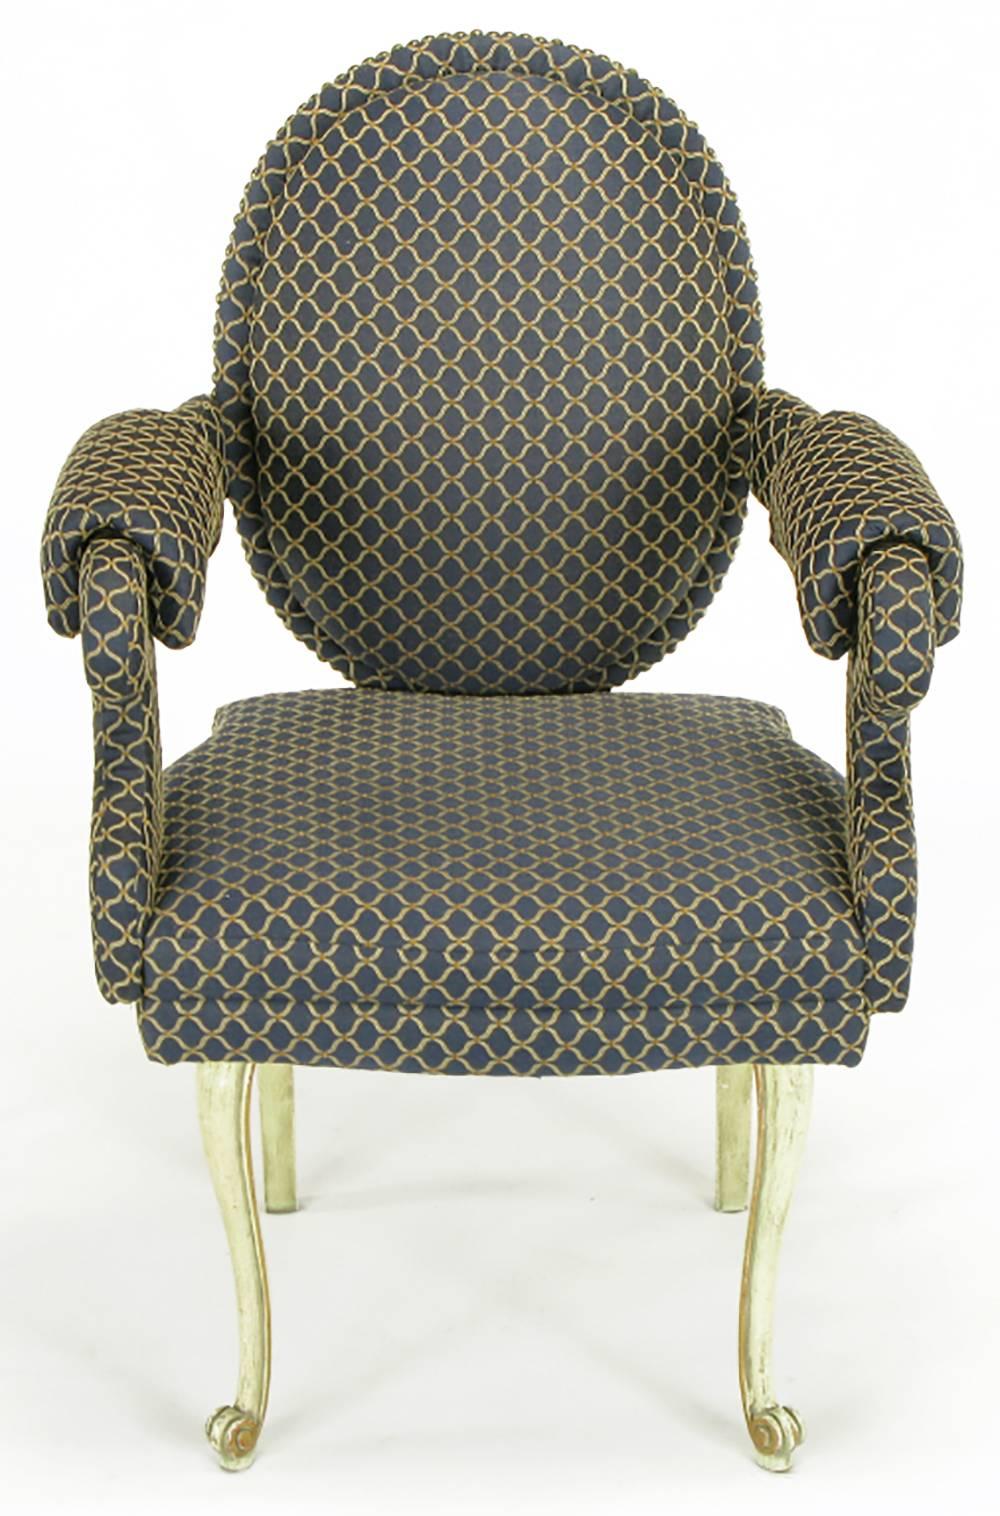 Die ungewöhnliche Mischung aus Louis XV- und Louis XVI-Elementen sowie die charakteristische Polsterung verleihen diesen Stühlen eine unglaubliche Linienführung. Alles oberhalb der Beine ist mit einem königsblauen und cremefarbenen Stoff gepolstert,